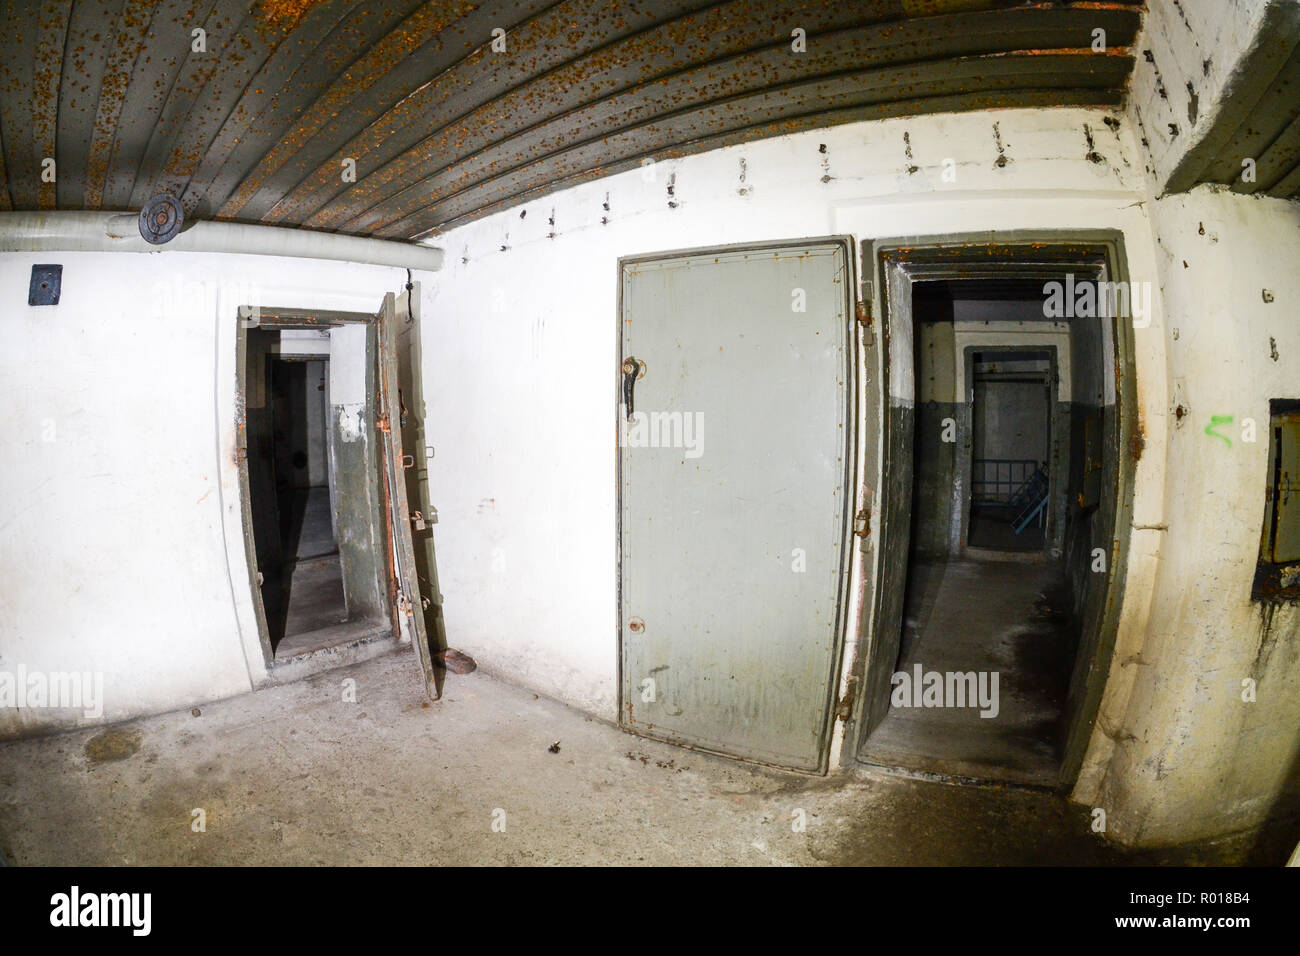 Abandonné et dévasté de l'intérieur de la fortification de défense côtière de la guerre froide dans l'hôtel, la Pologne. Banque D'Images